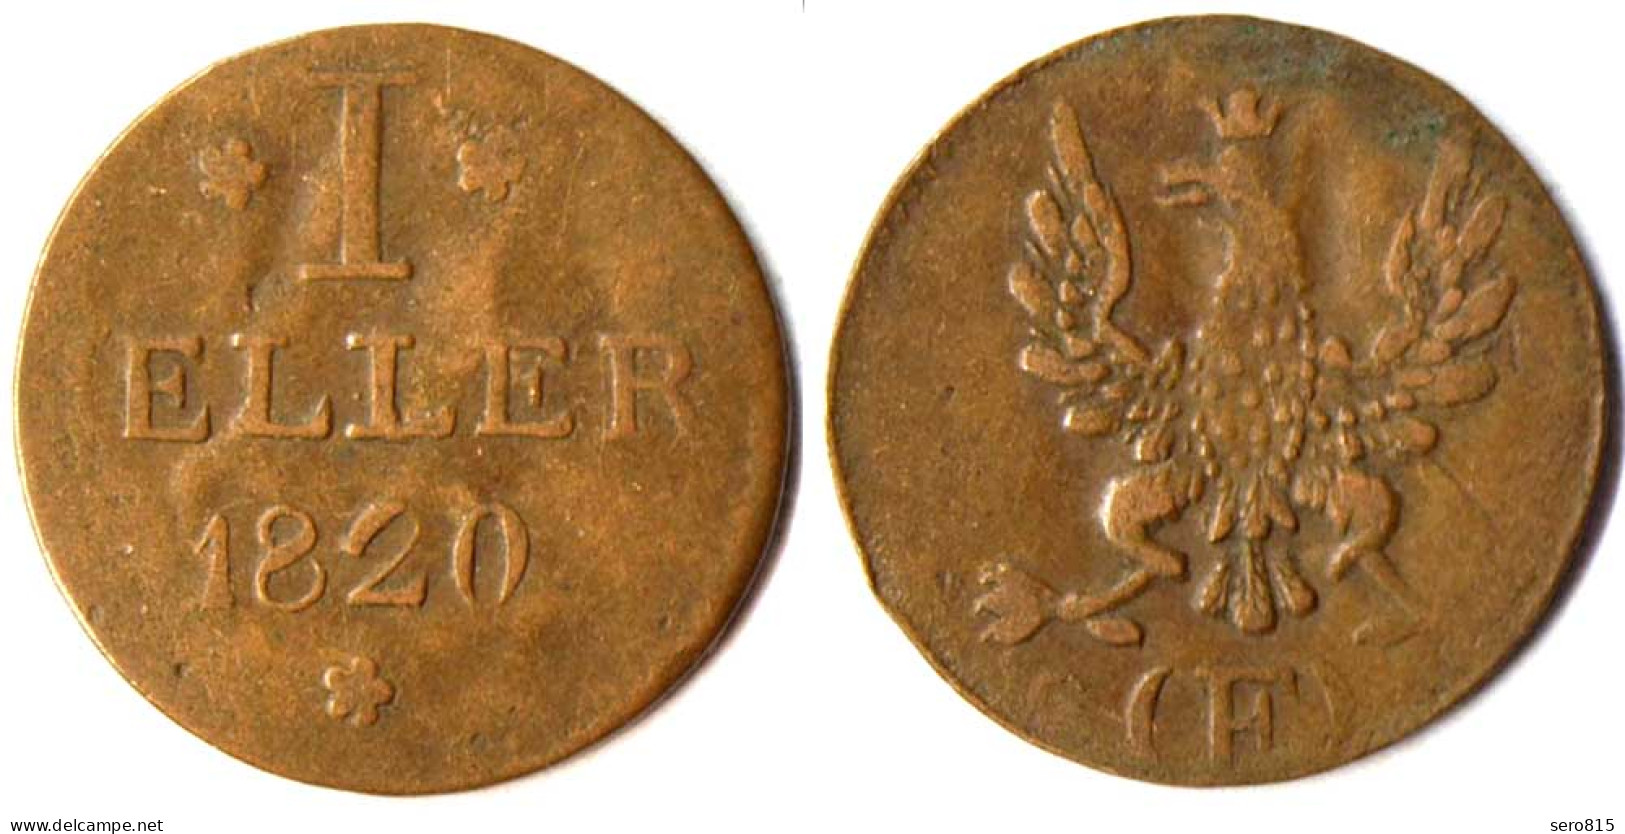 Frankfurt Altdeutsche Staaten 1 Heller 1820 '- F   (r1200 - Groschen & Andere Kleinmünzen